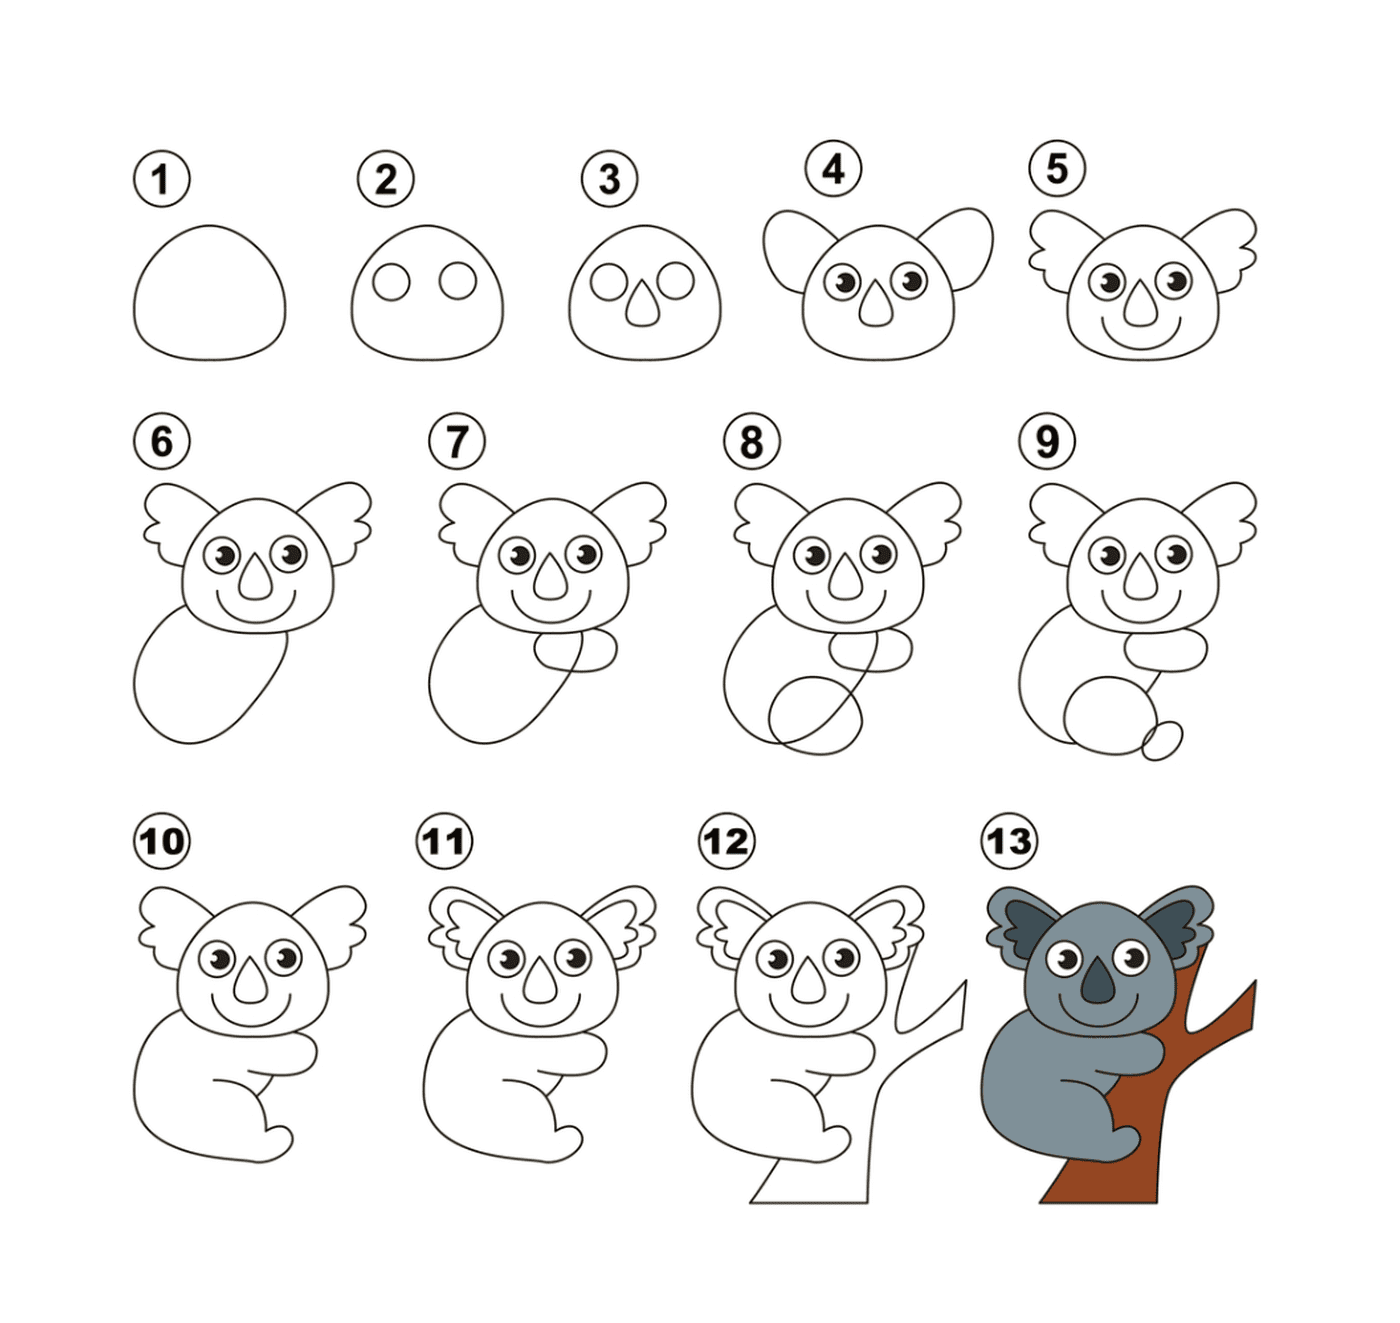  Como desenhar um coala facilmente 